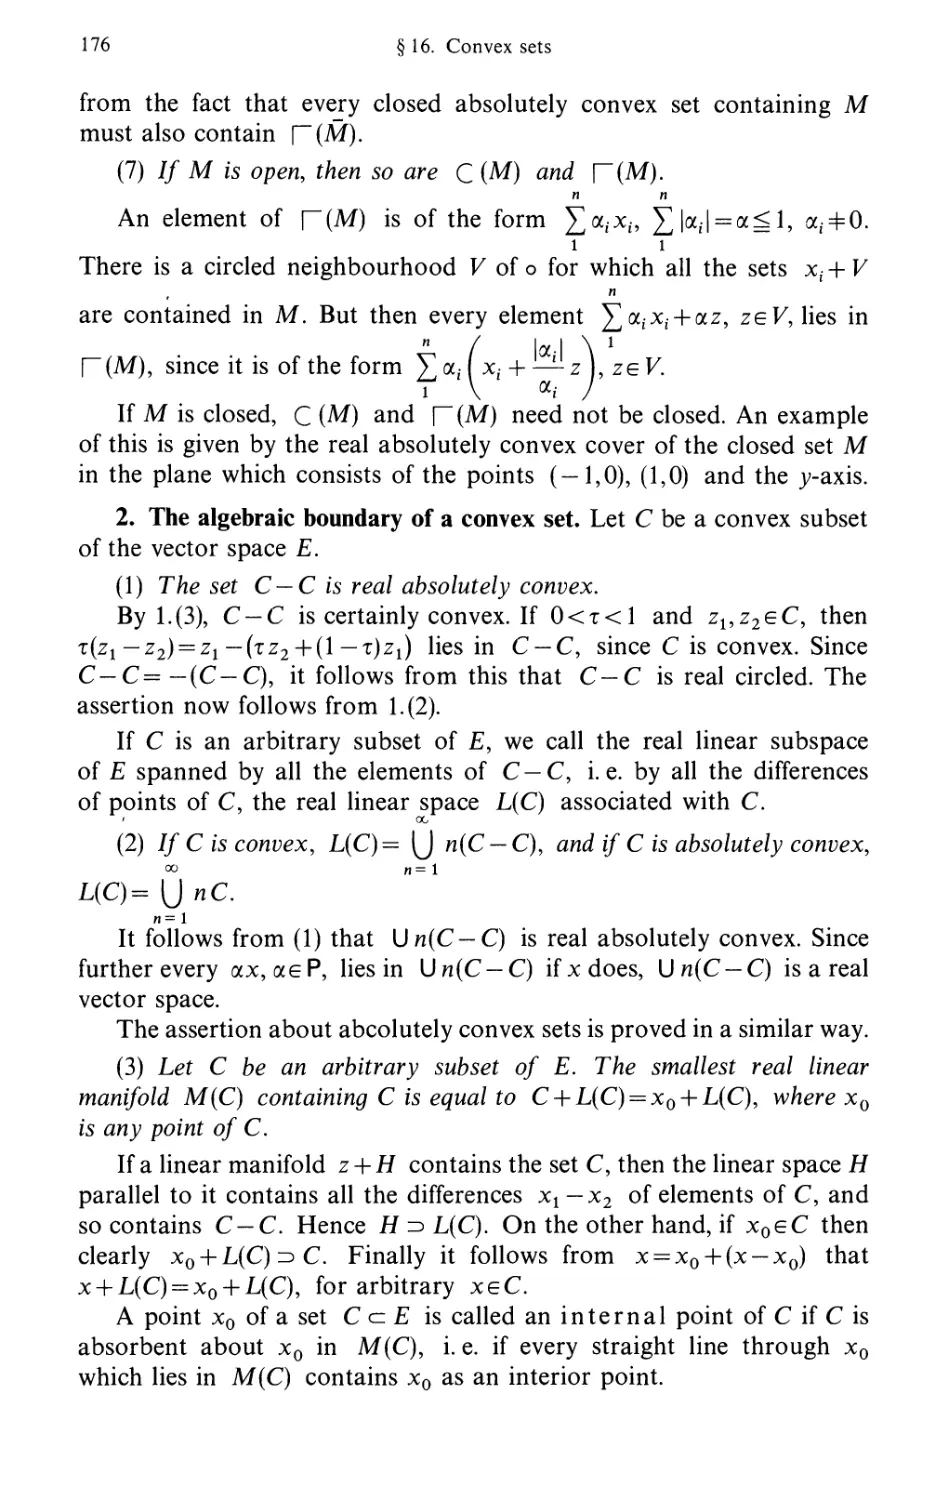 2. The algebraic boundary of a convex set